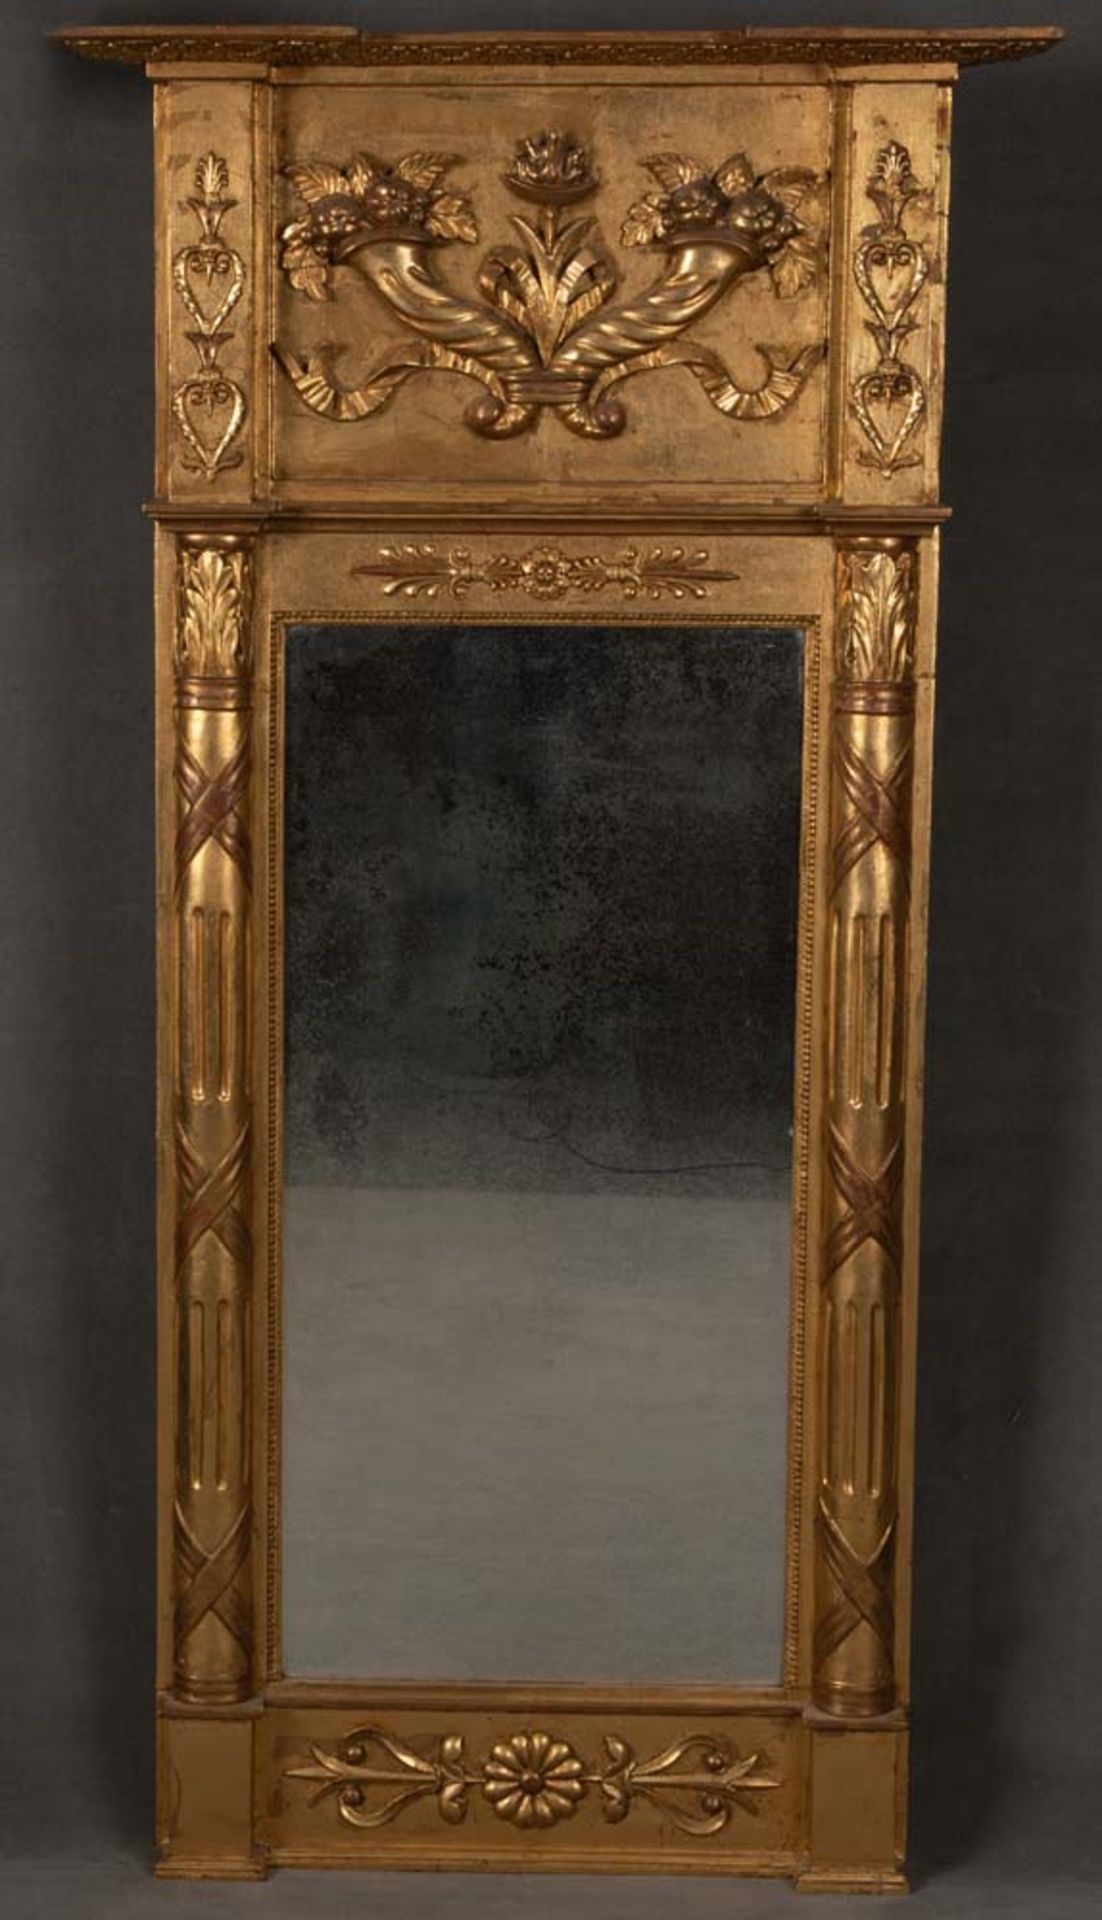 Spiegel. Deutsch 19. Jh. Massivholz, teilw. geschnitzt, auf Kreidegrund gold gefasst, 140 x 73 cm.